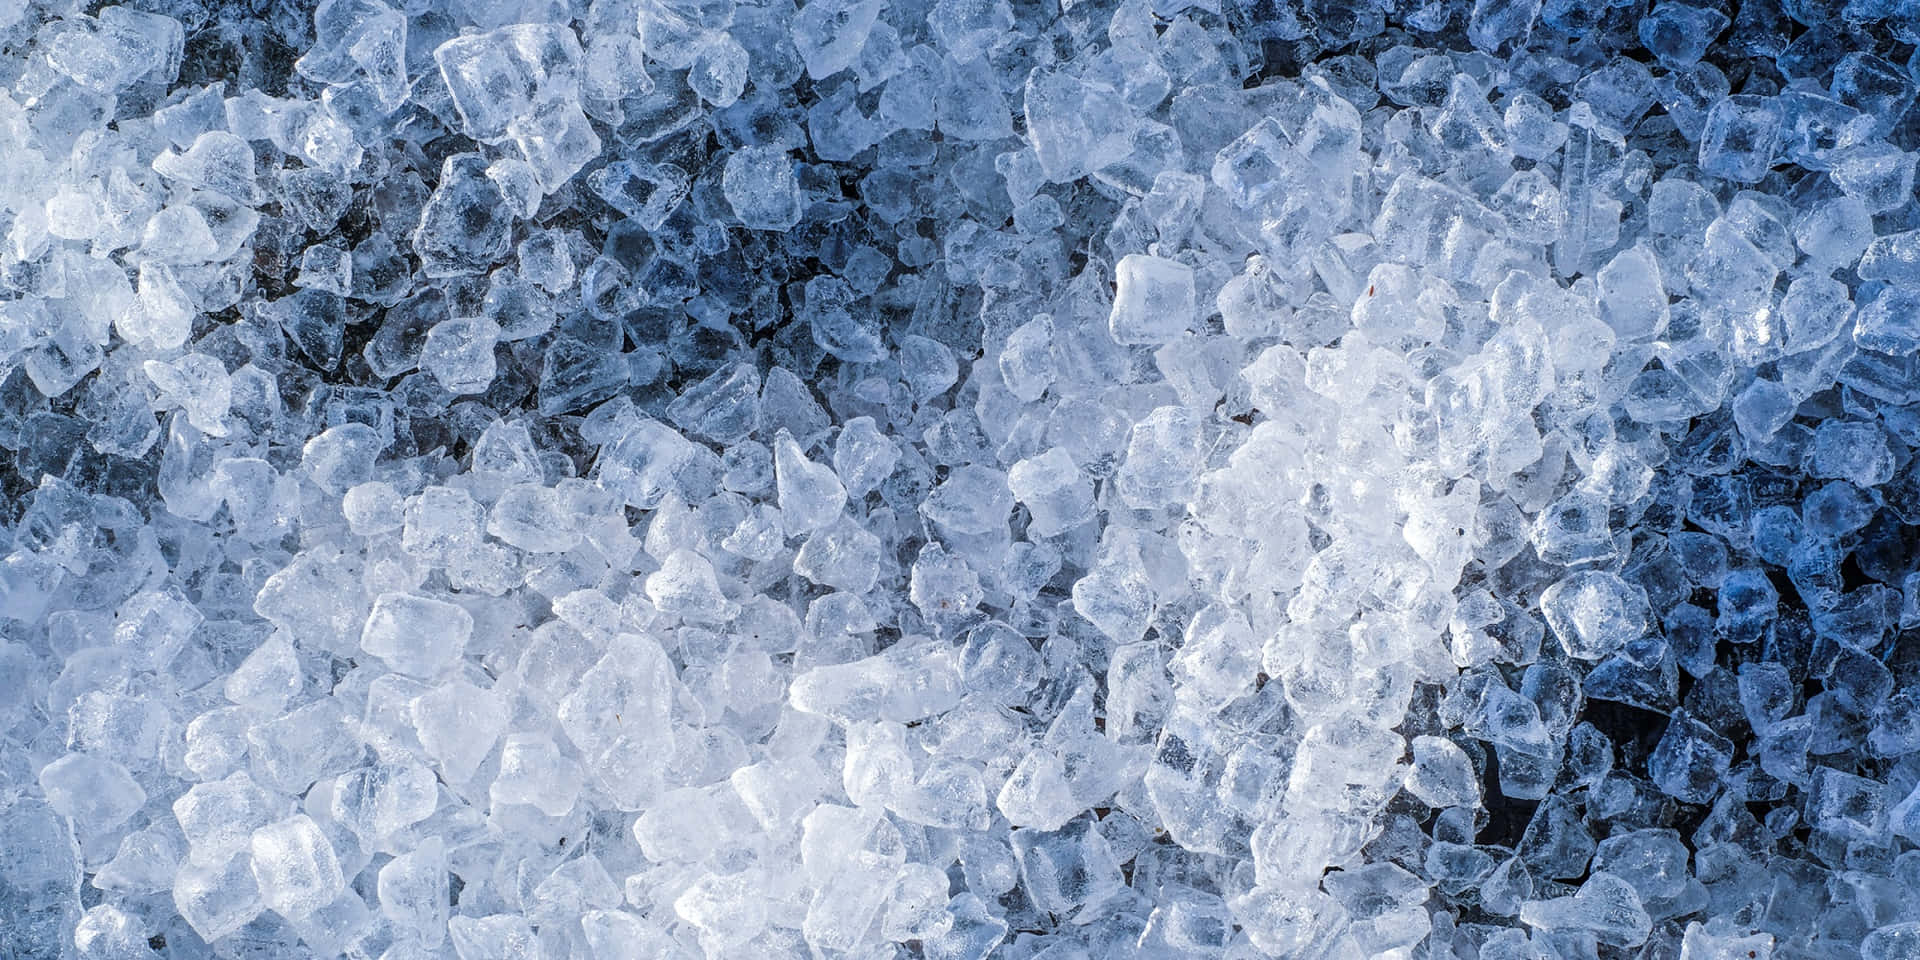 Forbløffendeblå Og Hvide Farver Skinner Igennem Dette Iskolde Vinterscene.